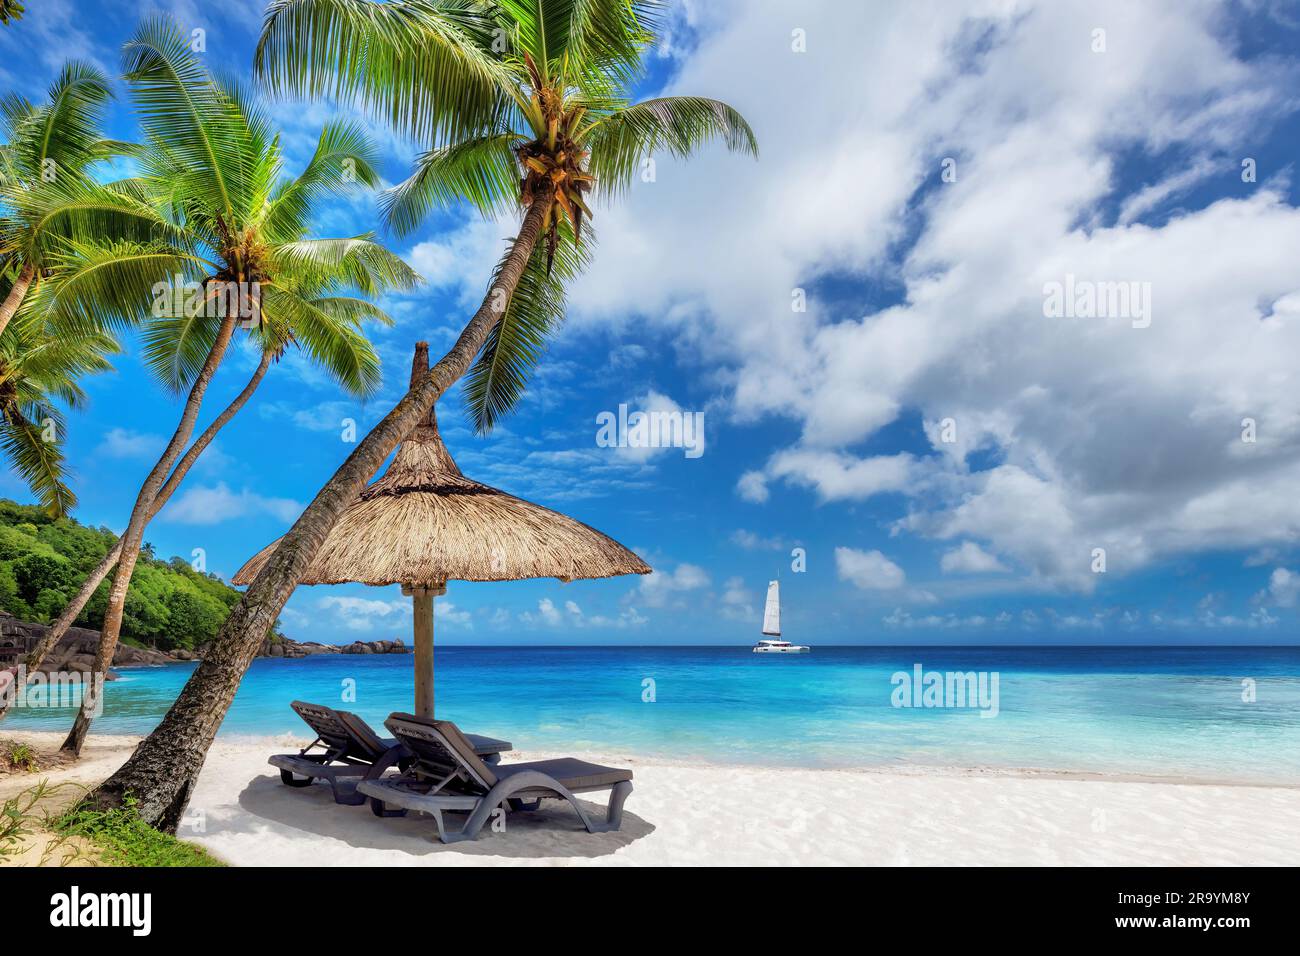 Spiaggia paradisiaca con palme, ombrellone e barca a vela nel mare tropicale dell'isola caraibica. Foto Stock